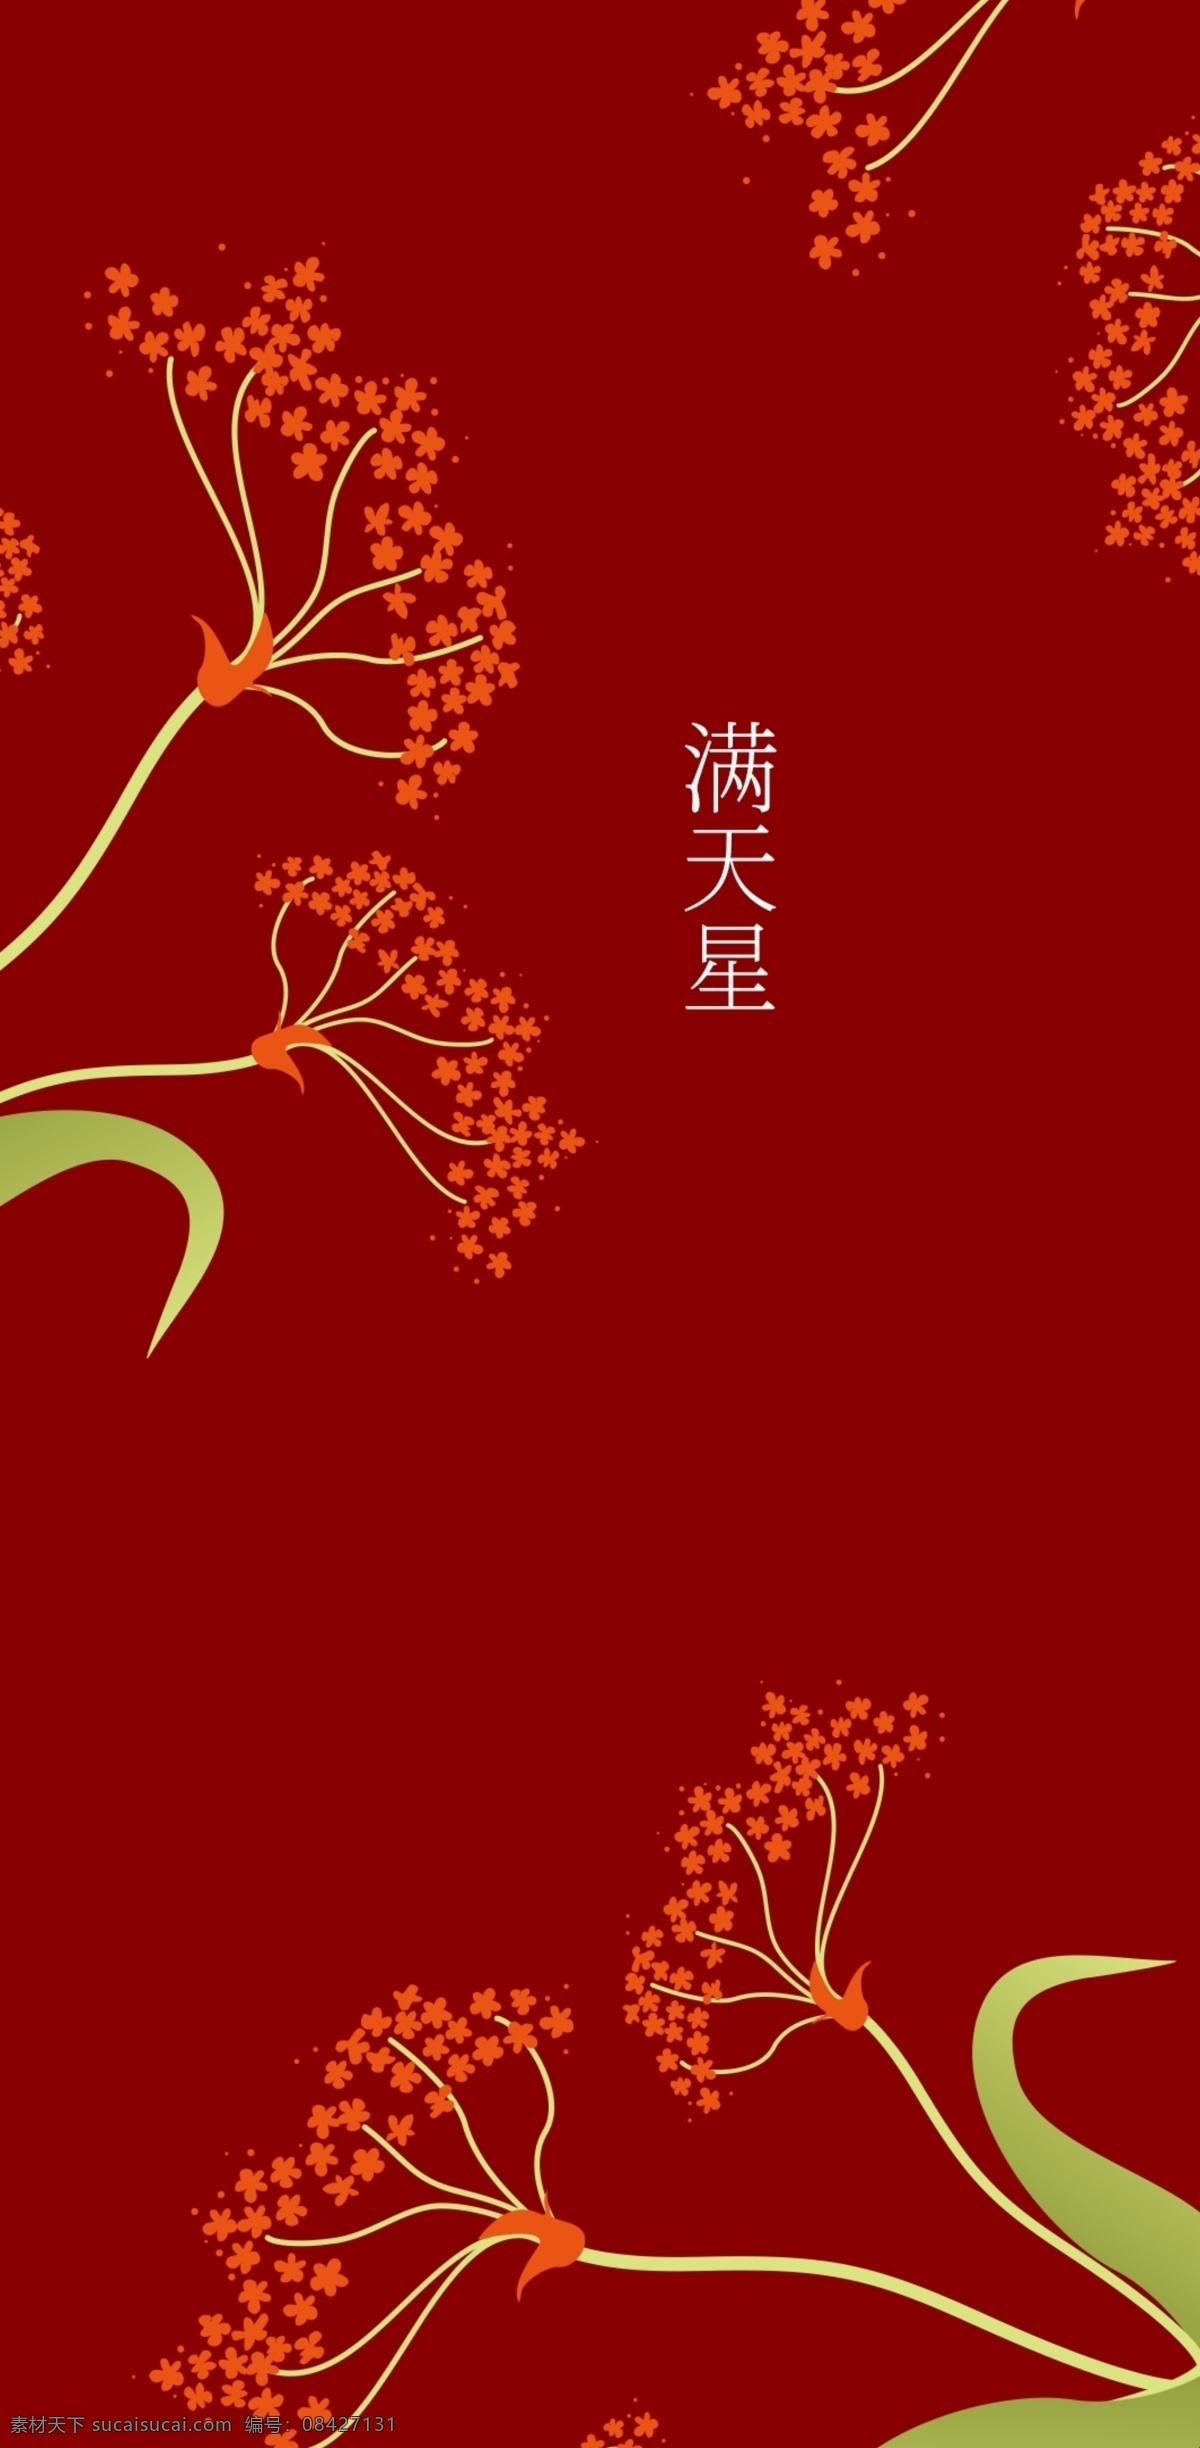 红色 中 国风 大气 时尚 手机壳 甲醛的危害 中国风 电子机械包装